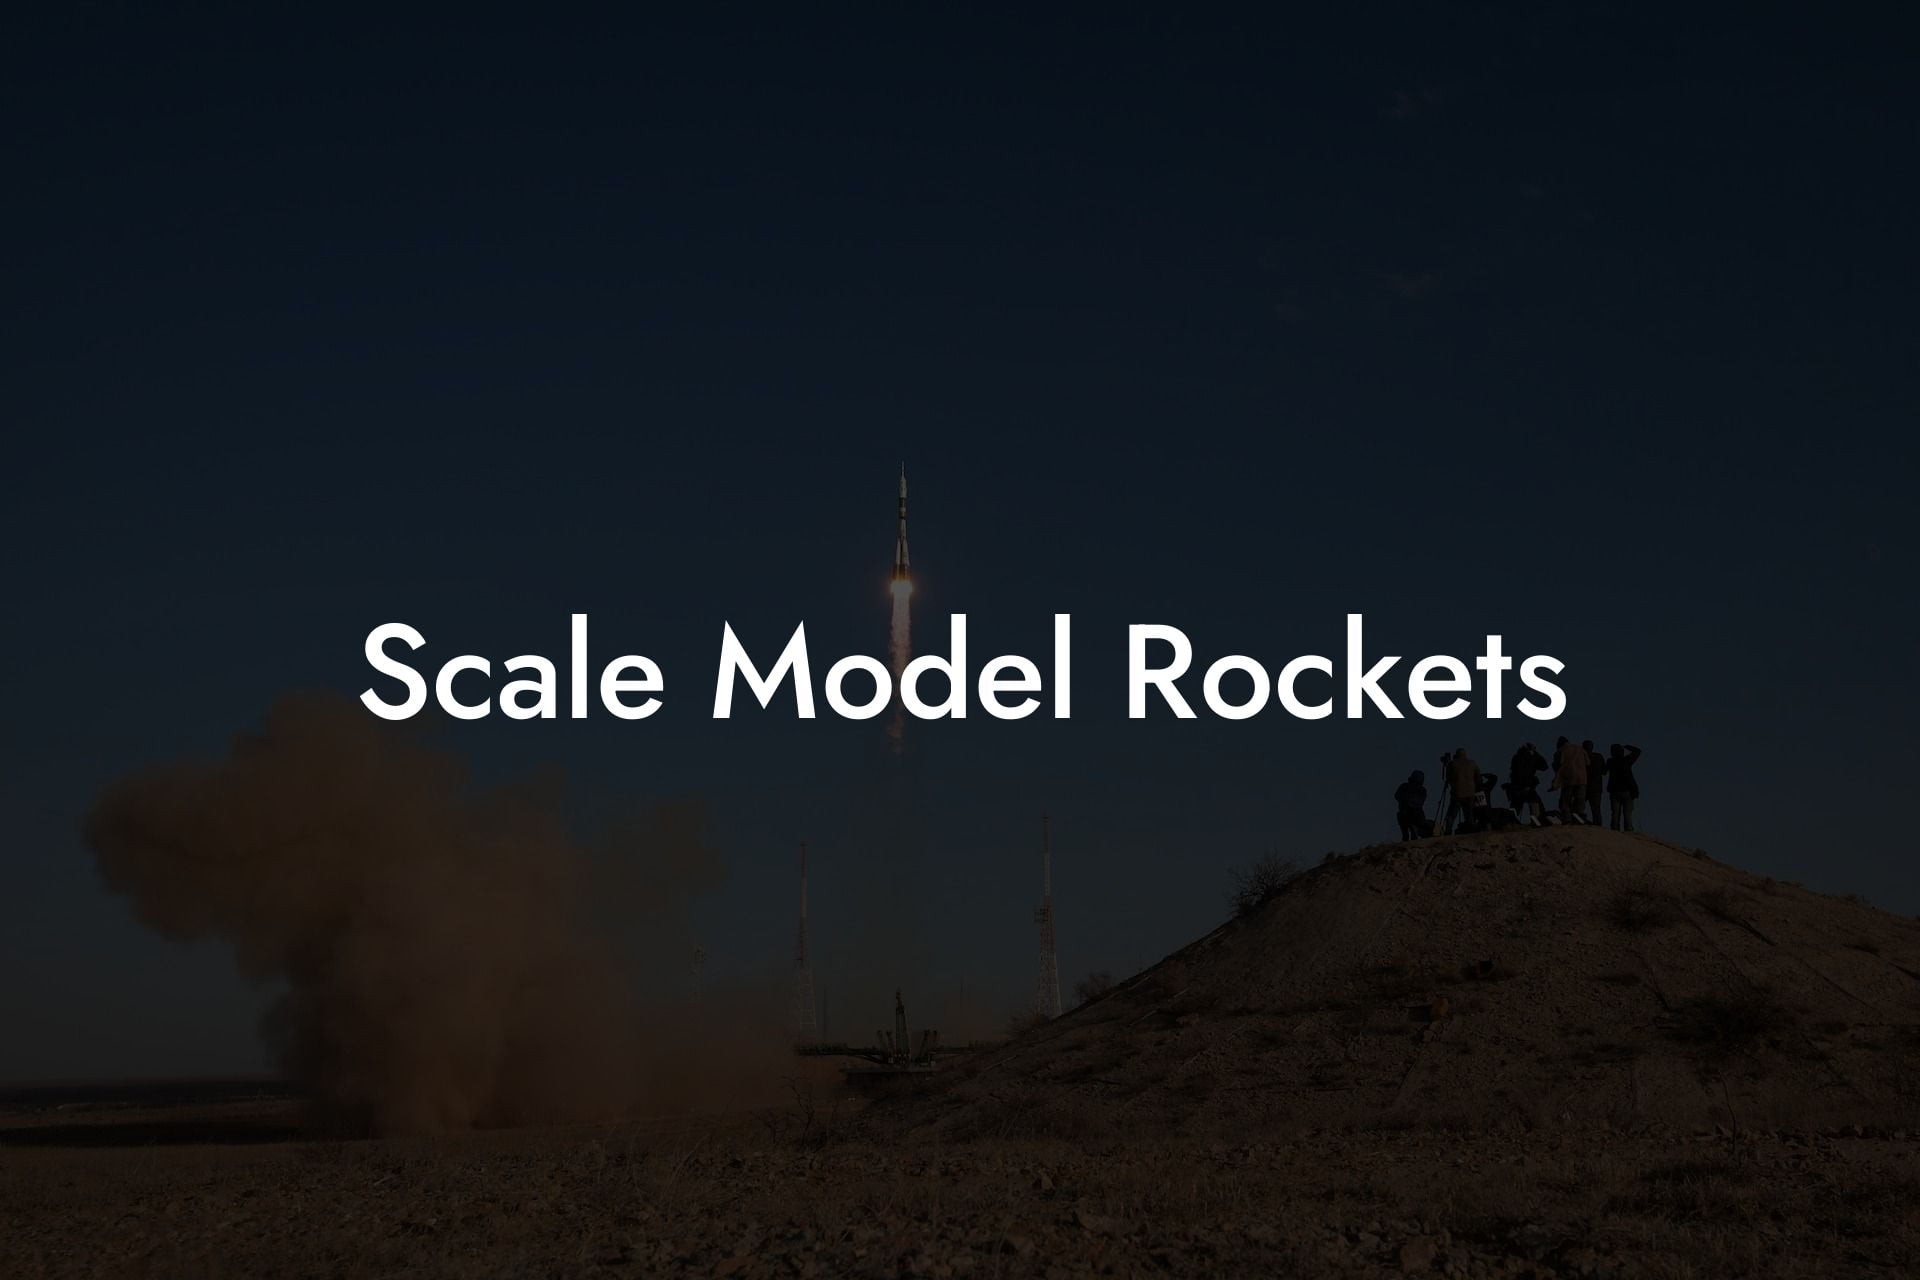 Scale Model Rockets